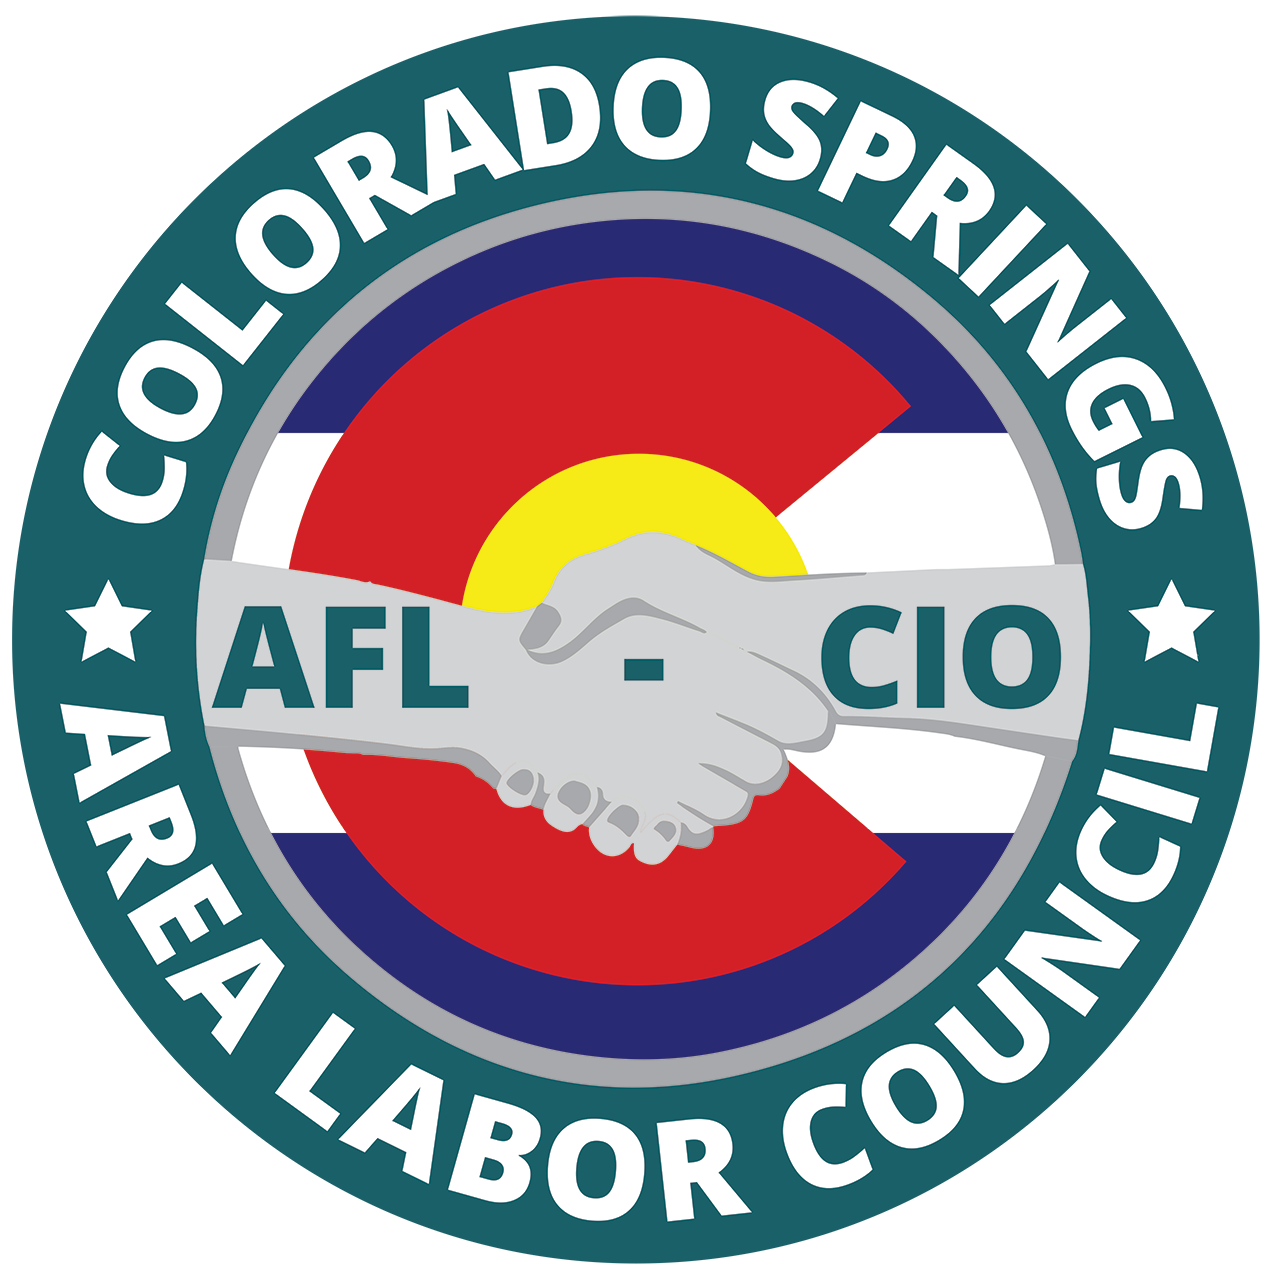 Colorado Springs Area Labor Council